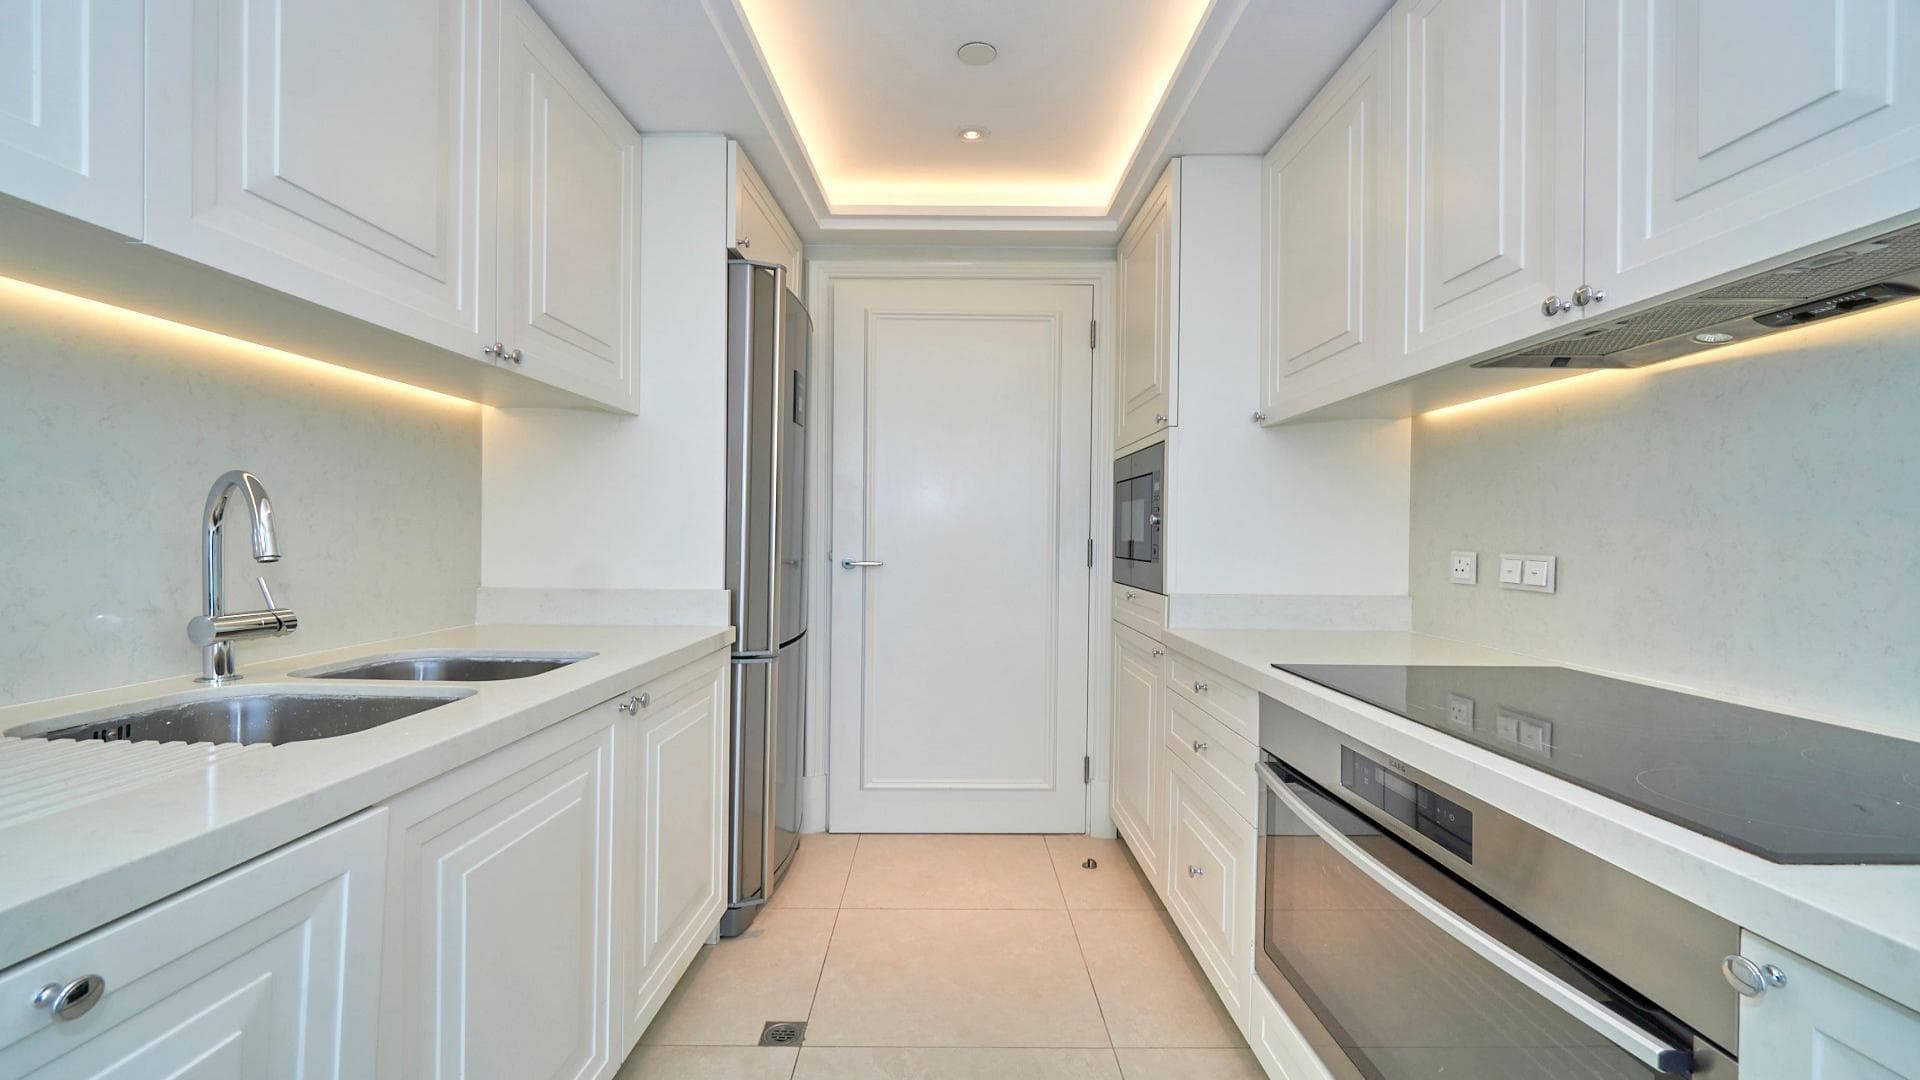 2 Bedroom Apartment For Rent Al Thamam 18 Lp37747 20d61309be9b7800.jpeg